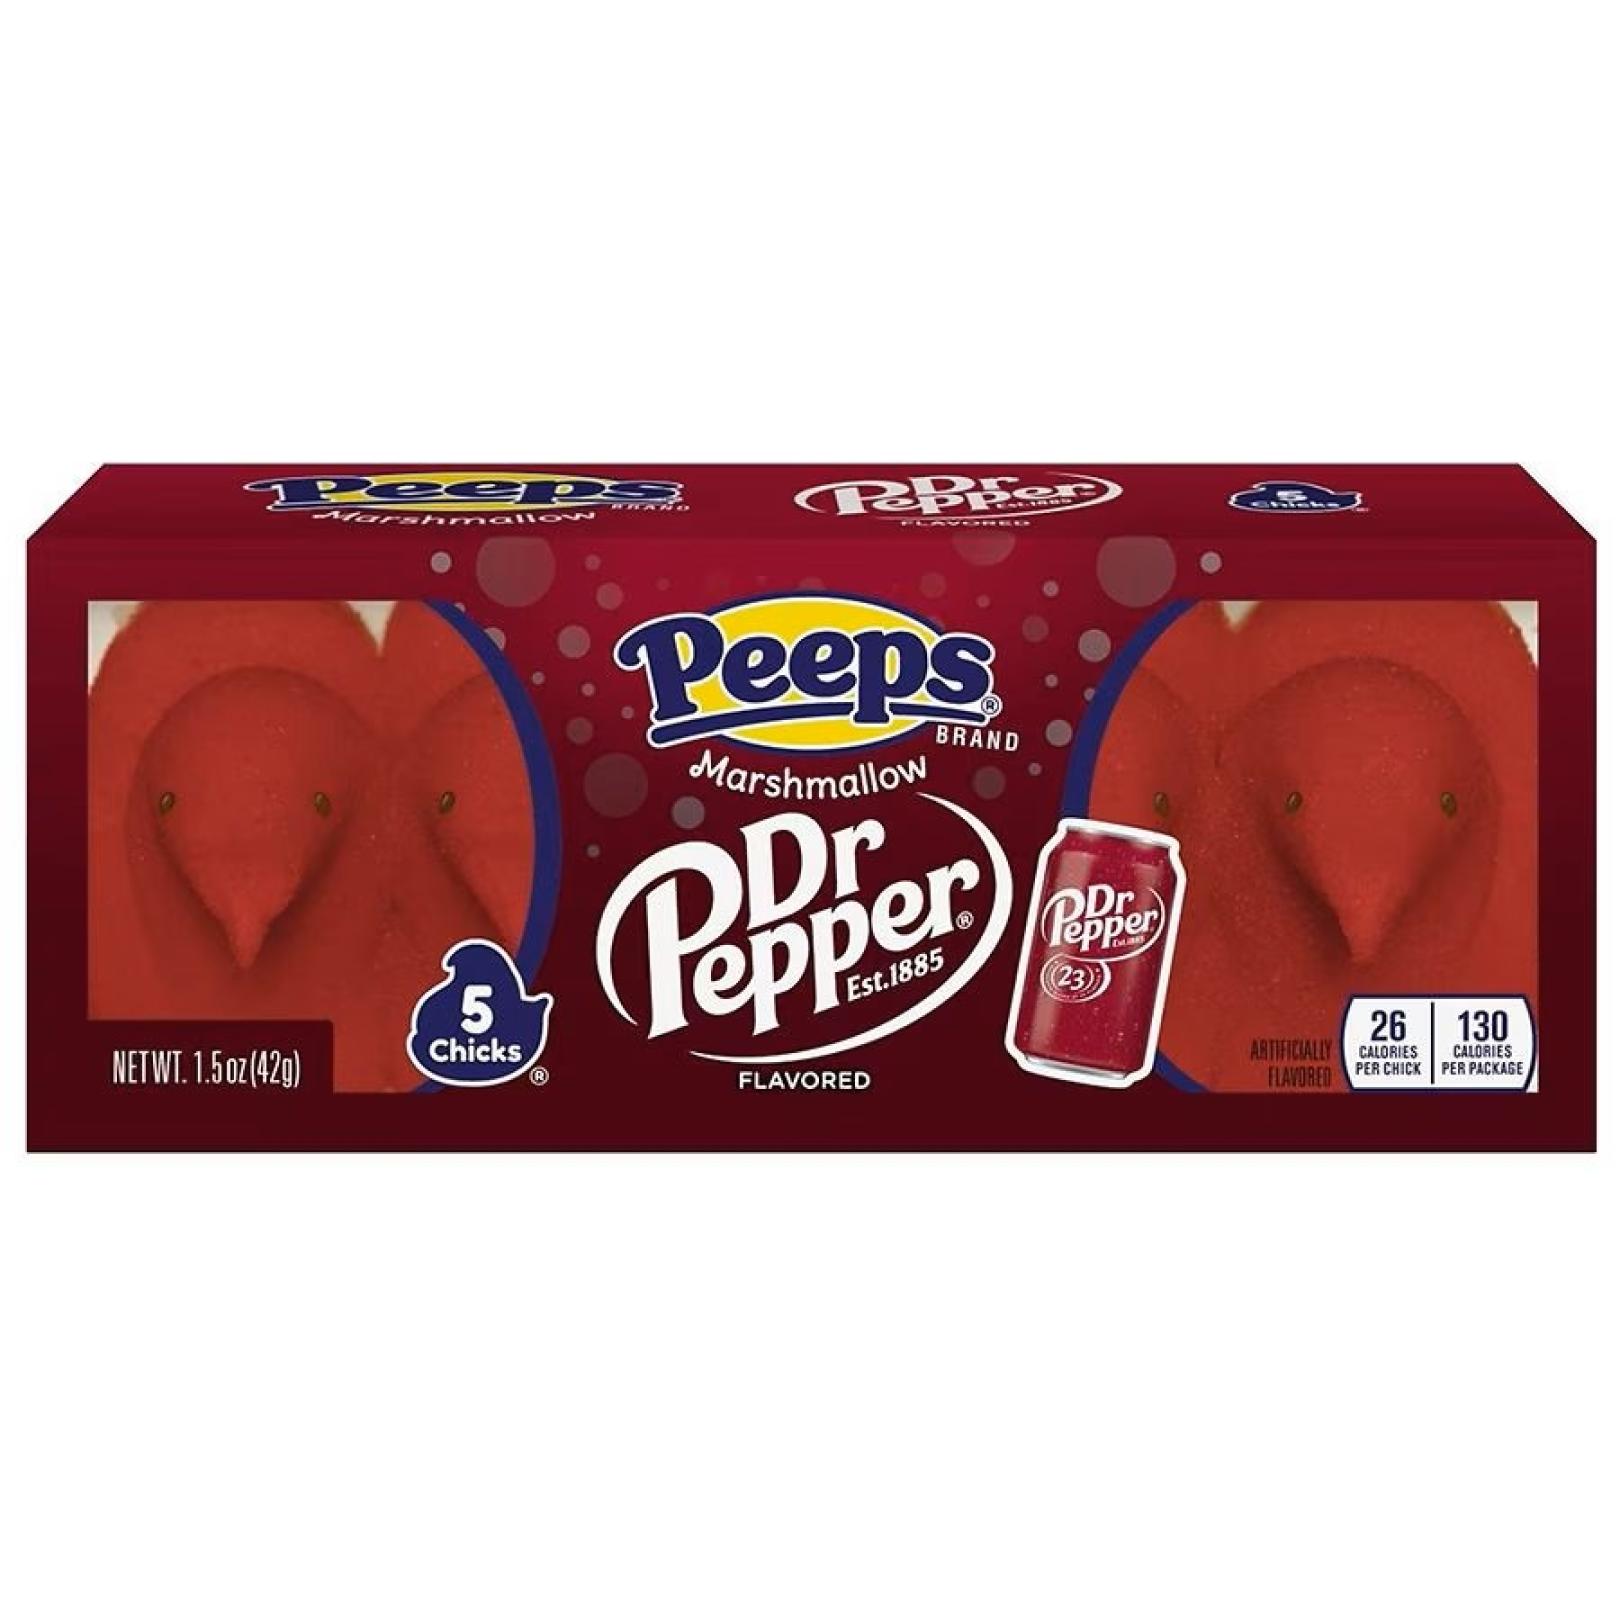 Peeps Marshmallow Chicks Dr. Pepper flavor